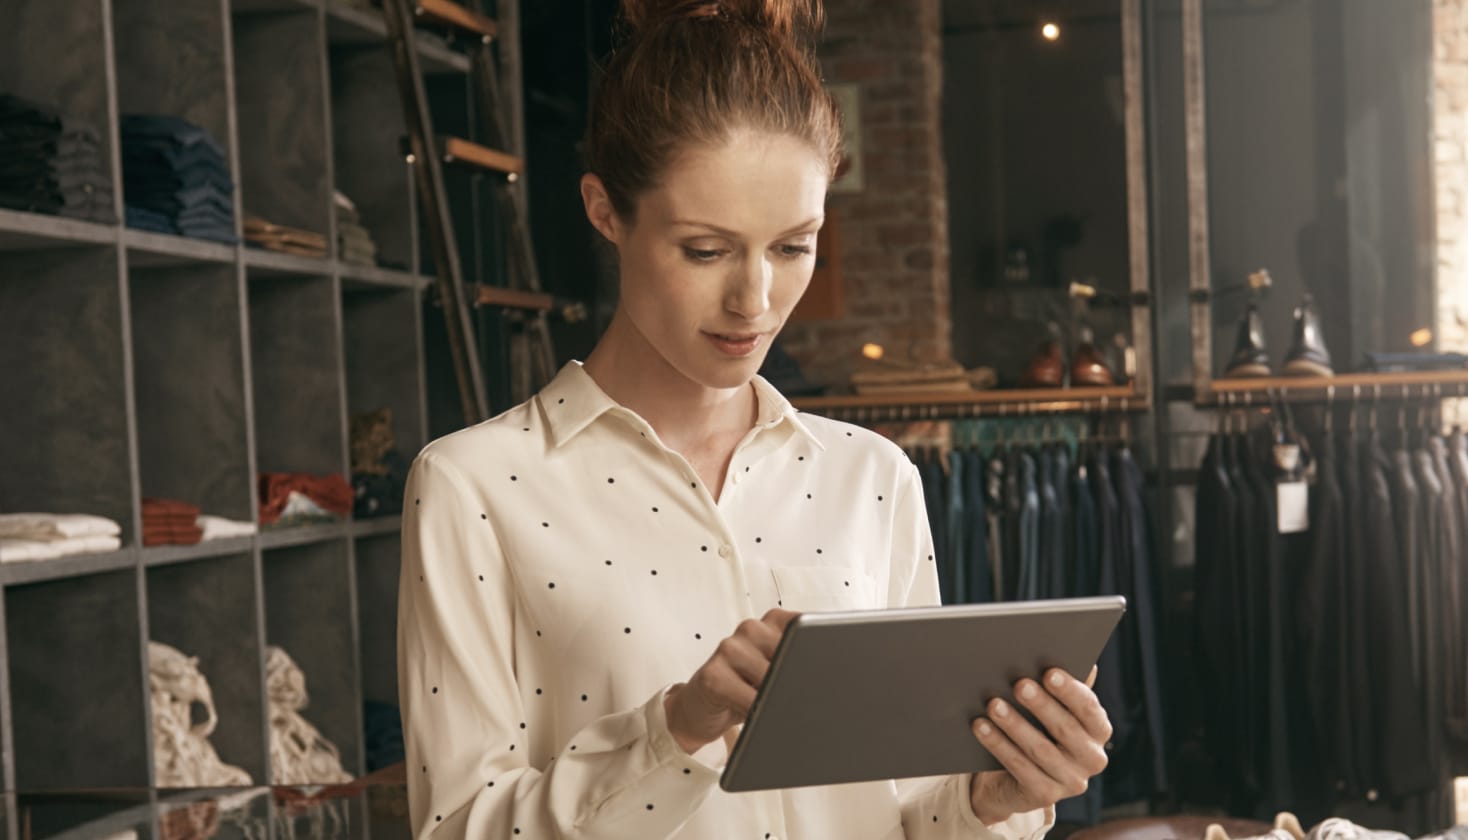 Una persona in un negozio di abbigliamento che guarda un tablet, presumibilmente per leggere il feedback di un sondaggio per i clienti